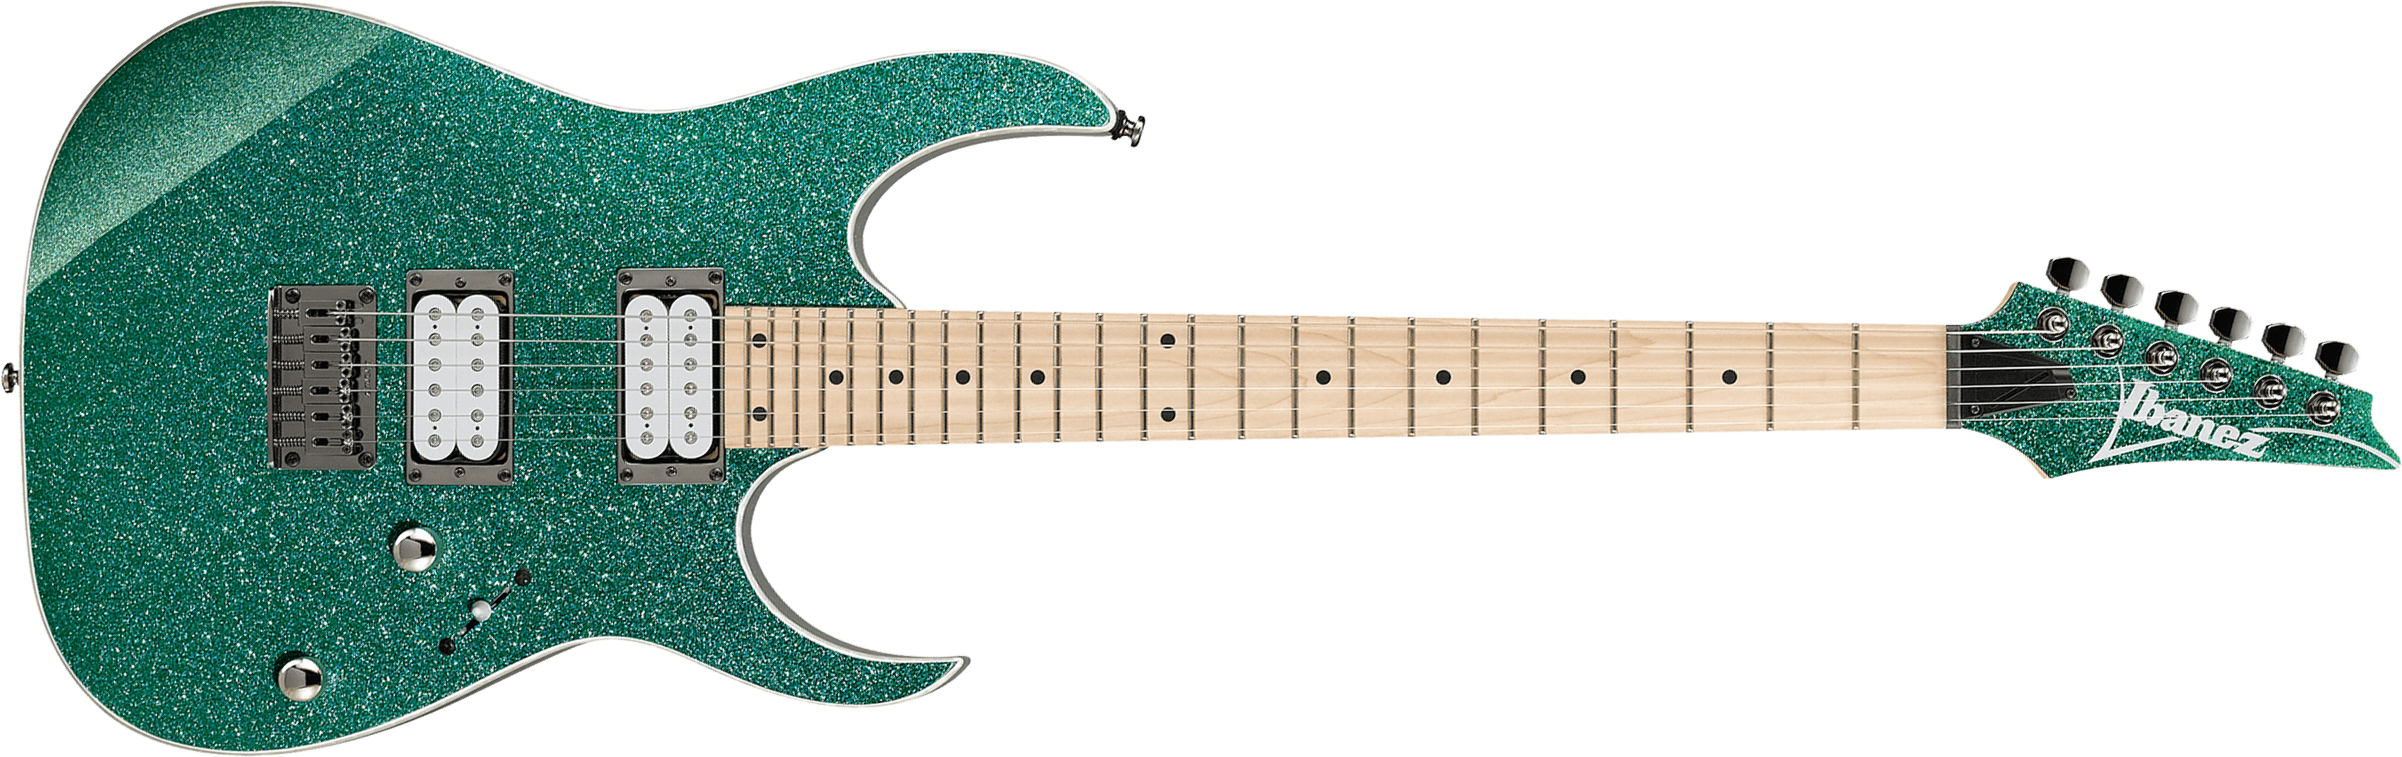 Ibanez Rg421msp Tsp Standard Ht Hh Mn - Turquoise Sparkle - Guitarra eléctrica con forma de str. - Main picture